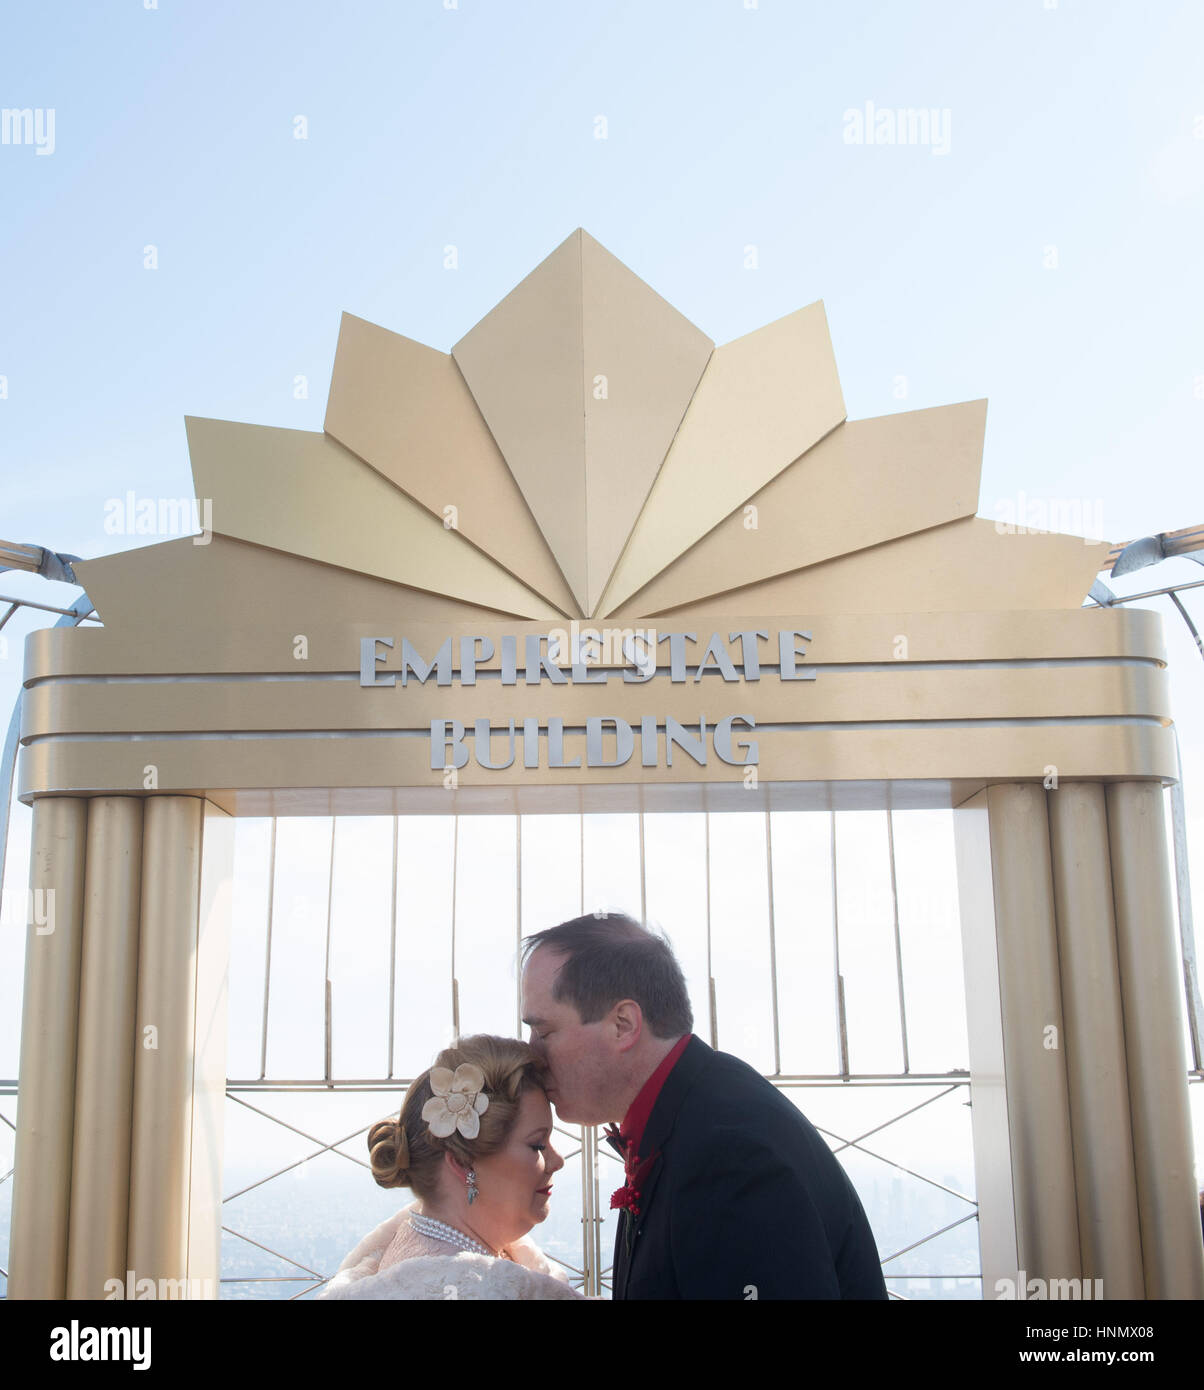 New York, aux États-Unis. 14Th Feb 2017. Catherine Malat et Eric LaStrange sont mariés dans le cadre de l'Empire State Building's 23rd Annual Valentine's Day Weddings contest, le 14 février 2017. Credit : Bryan Smith/ZUMA/Alamy Fil Live News Banque D'Images